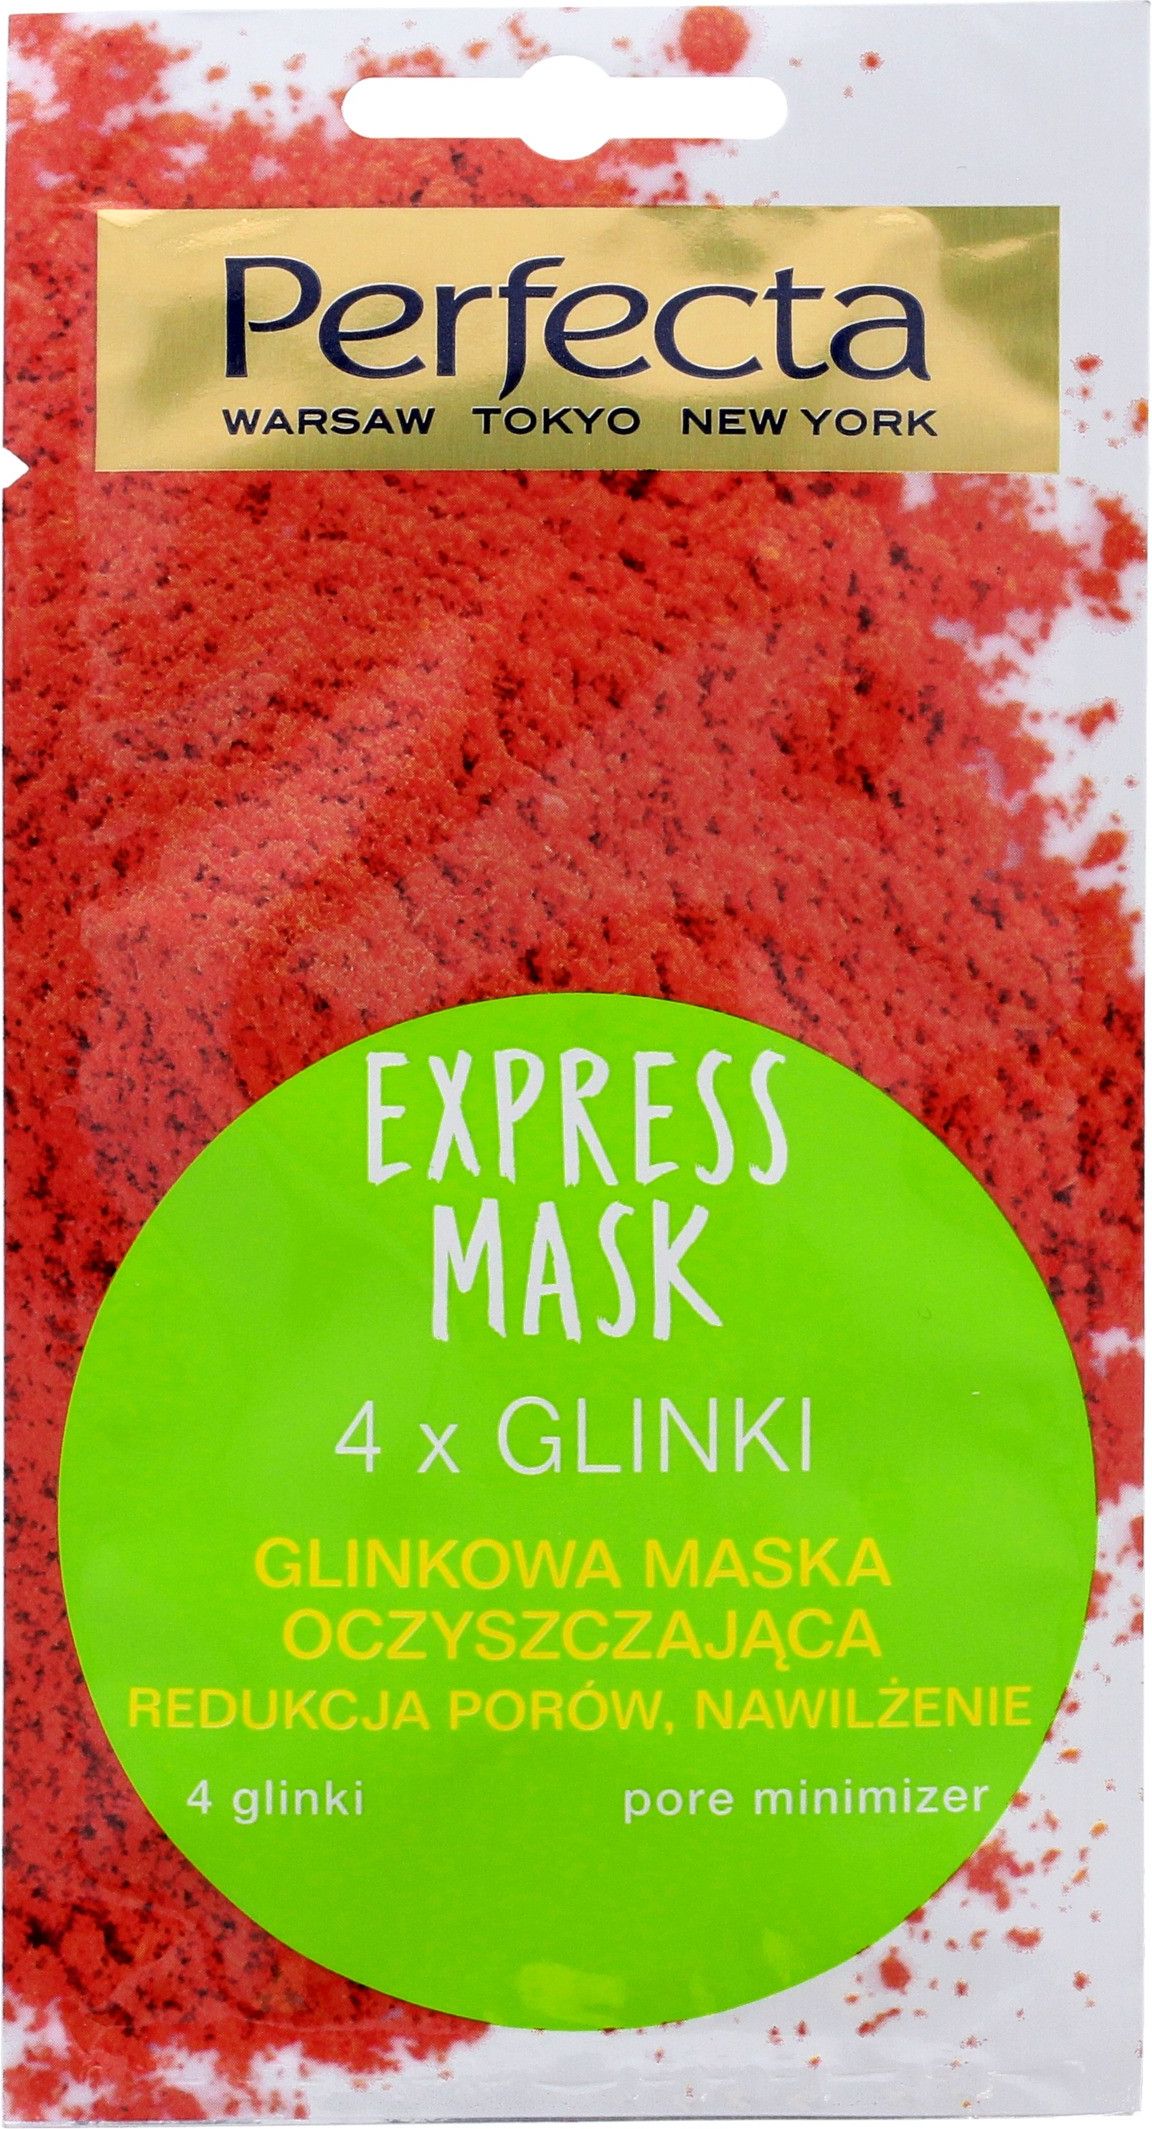 Perfecta Perfecta Express Mask Glinkowa Maska oczyszczajaca 4 Glinki 8ml 071387 (5900525051387)